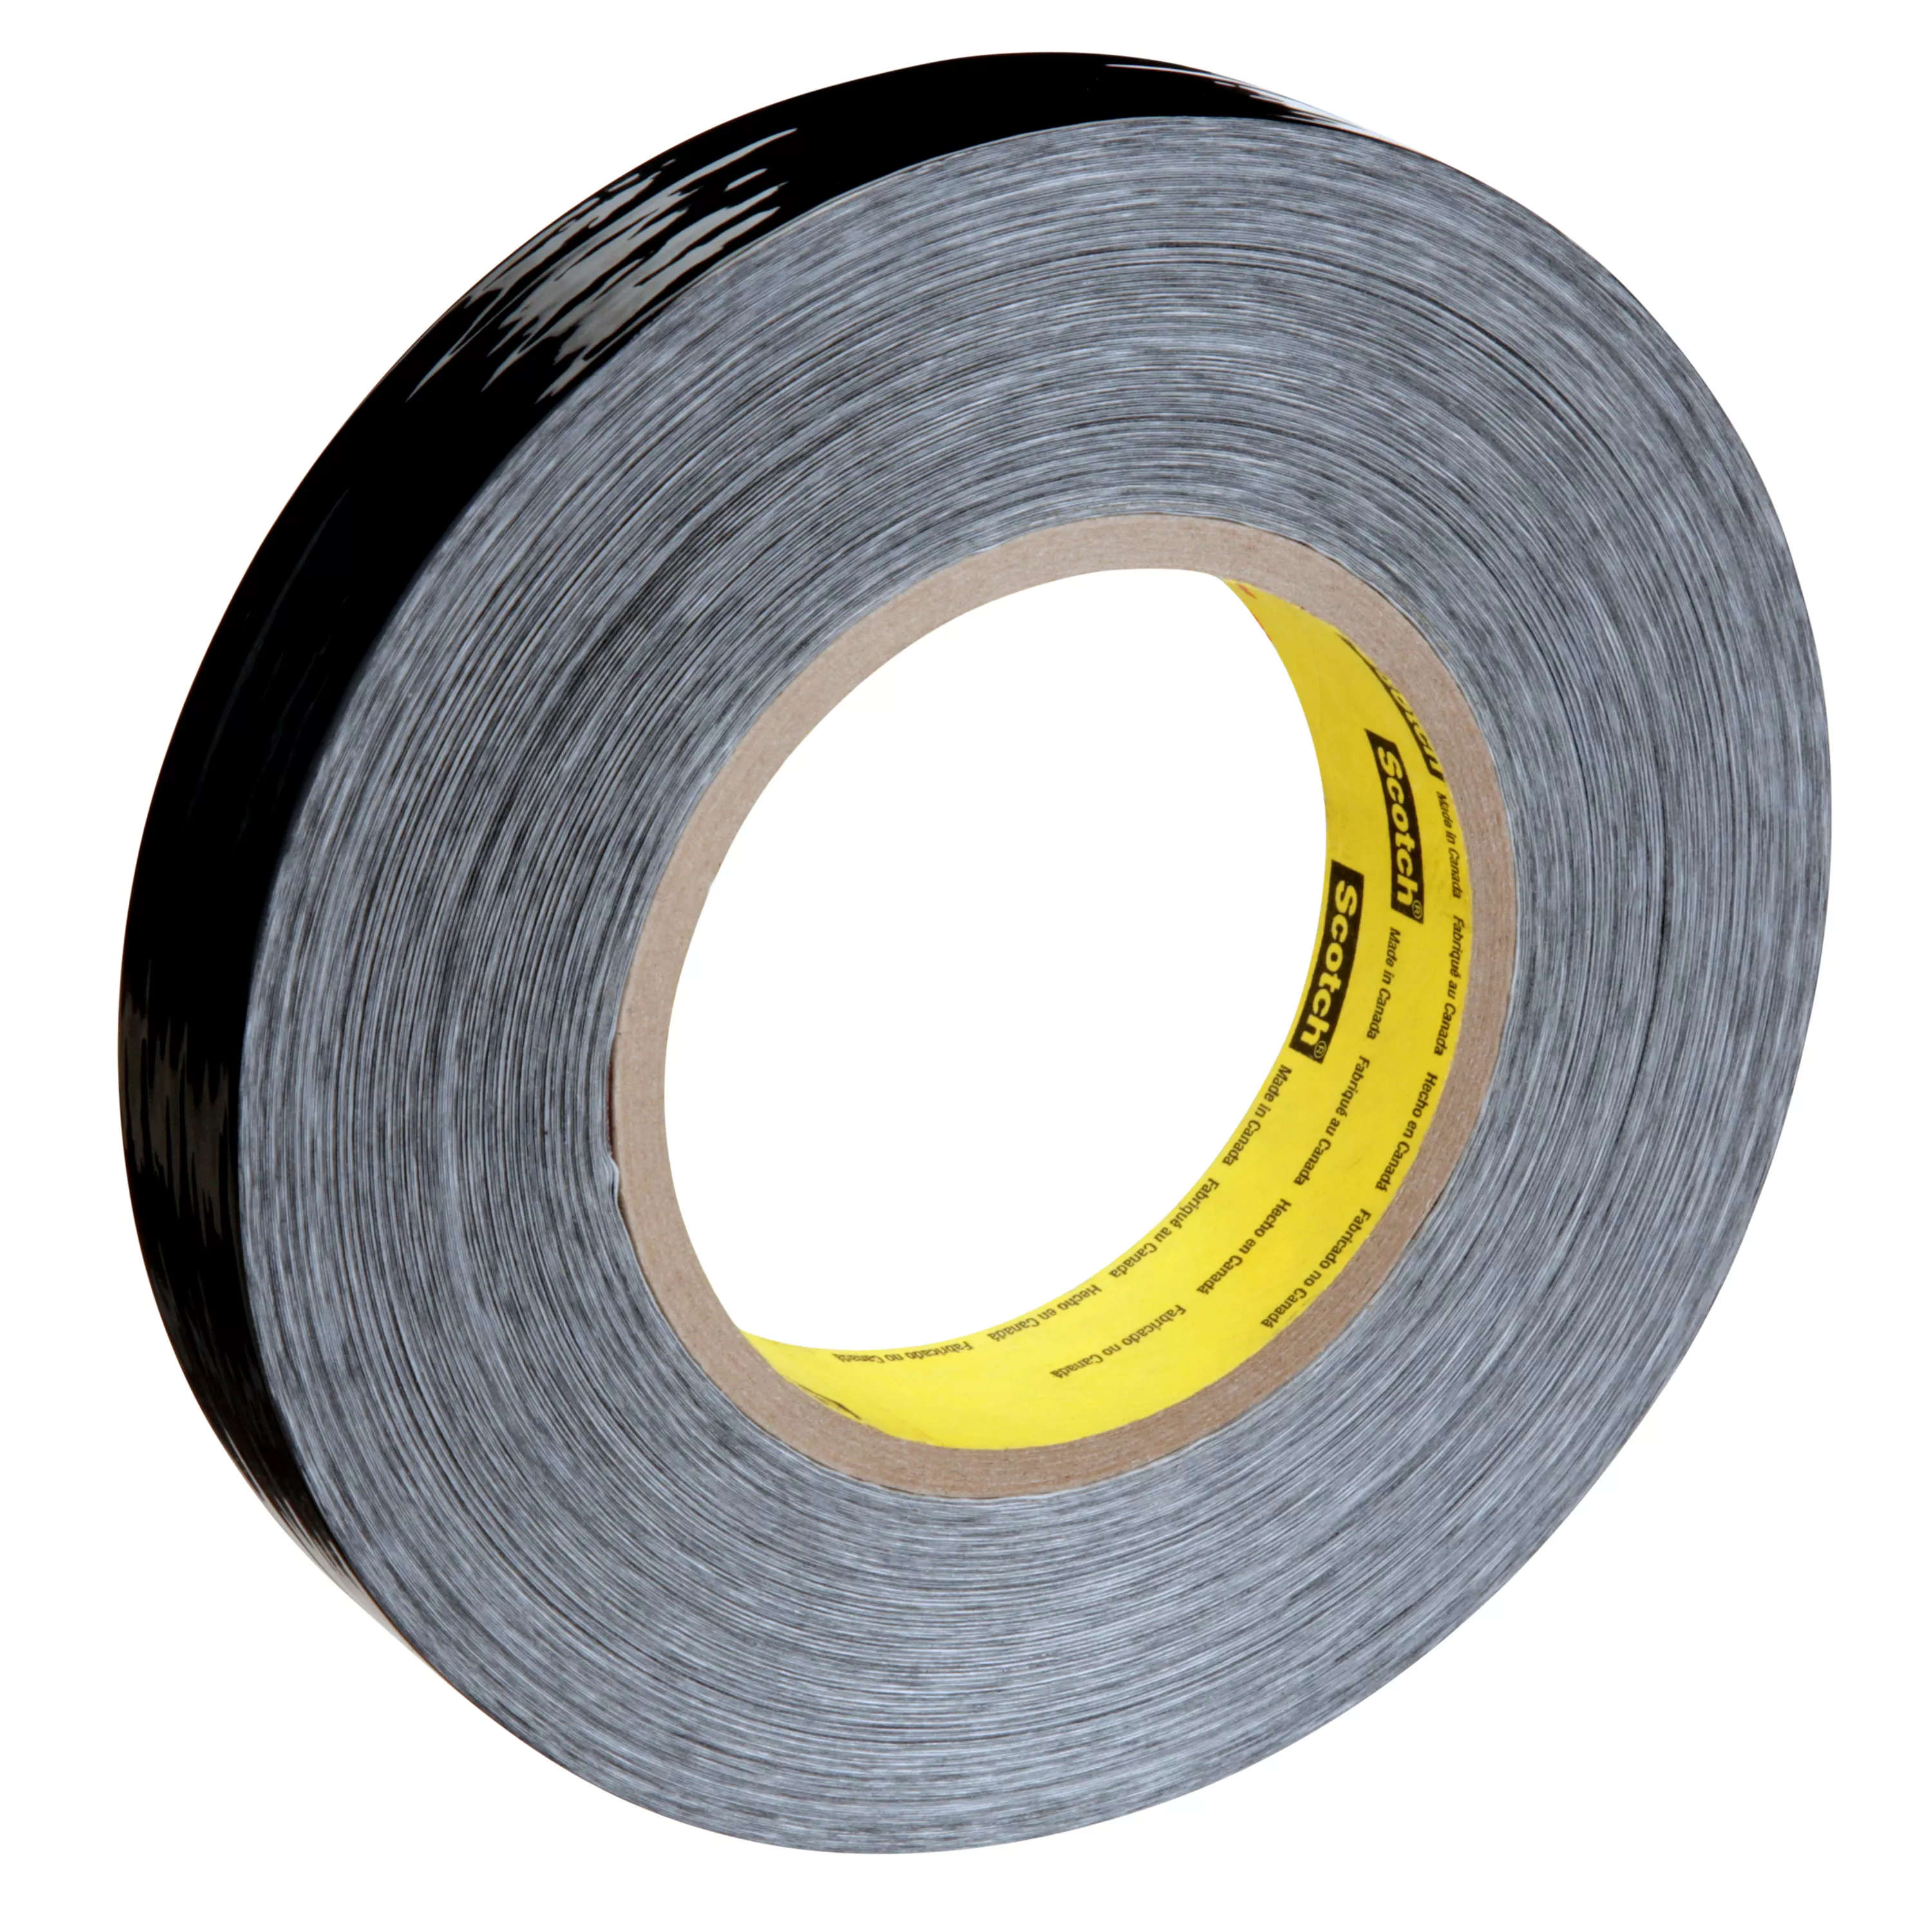 Scotch® Filament Tape 890MSR, Filament Tape BK, 24 mm x 55 m, 8 mil, 36
Roll/Case